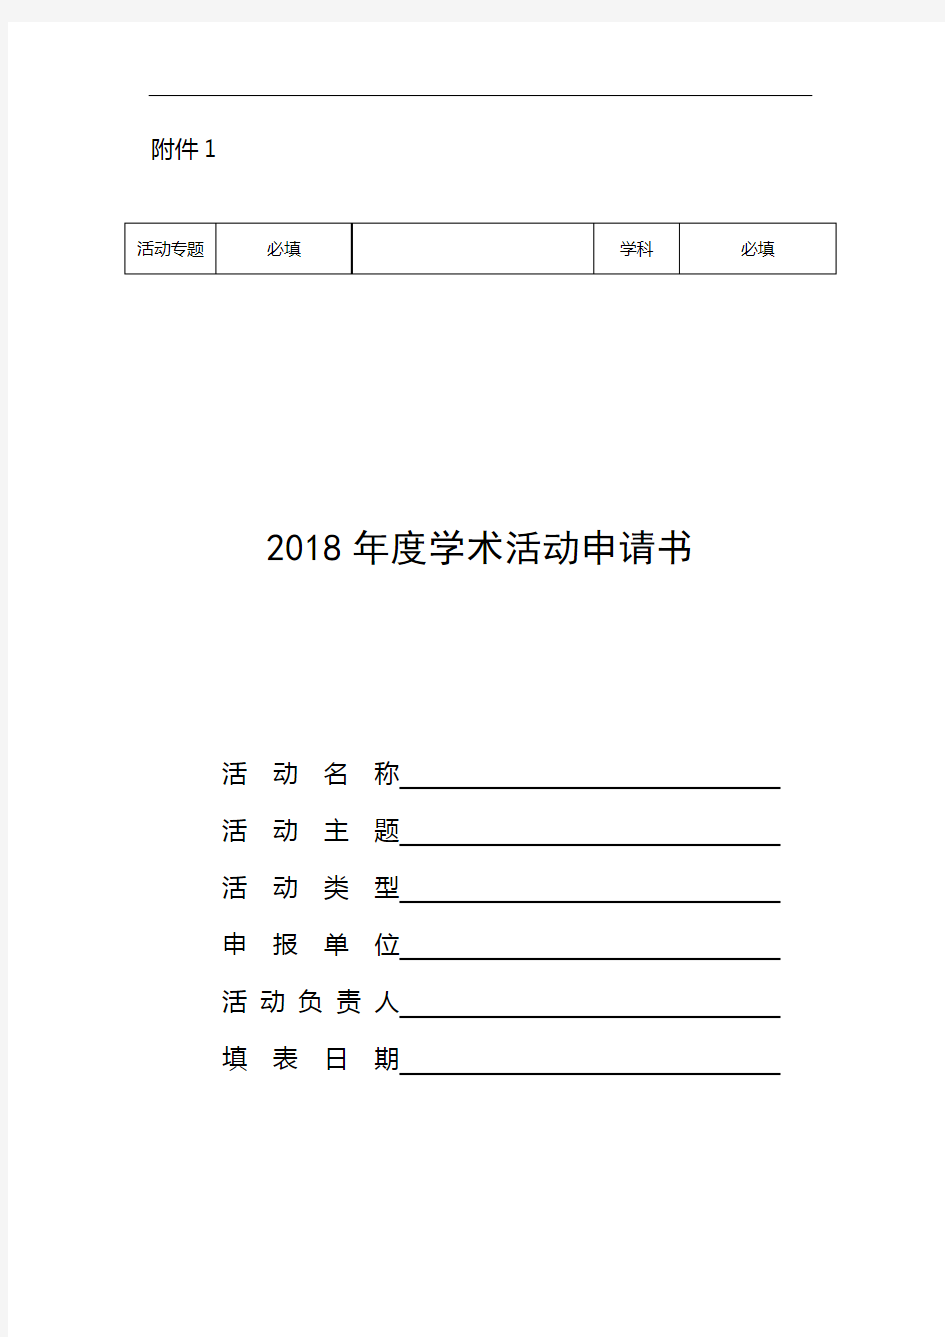 2018年度学术活动申请书【模板】